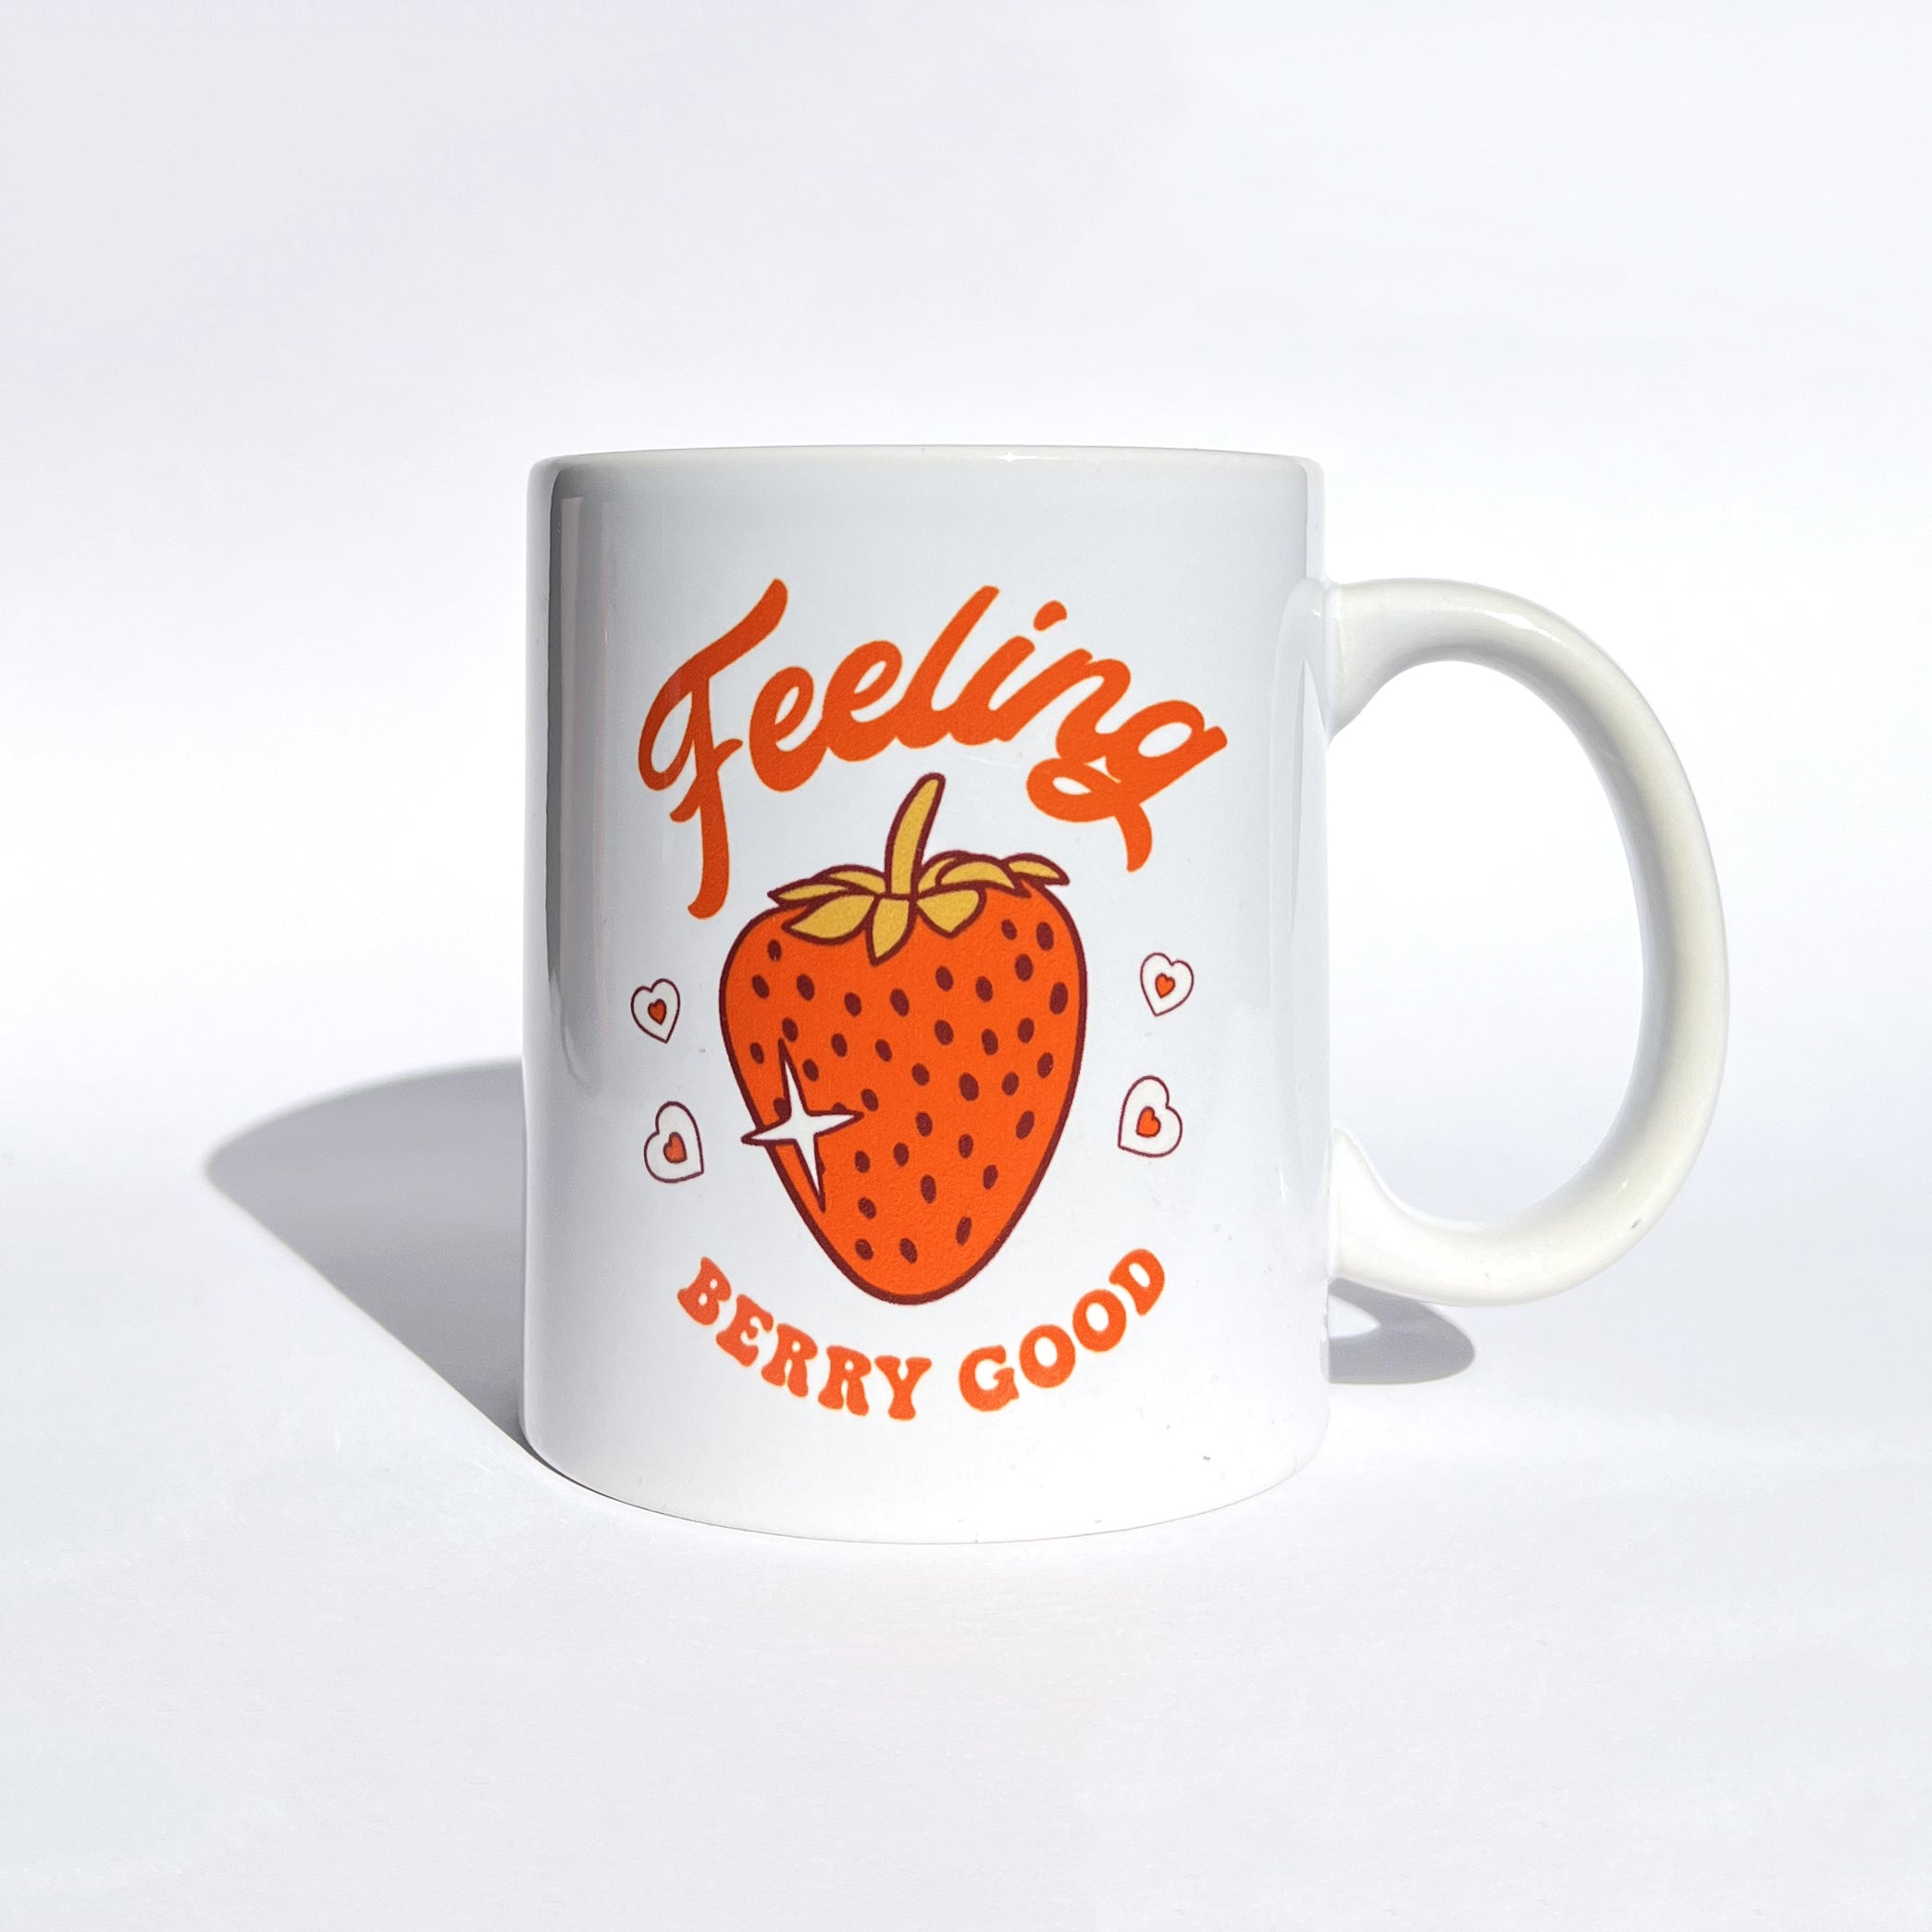 Feeling Berry Good Mug